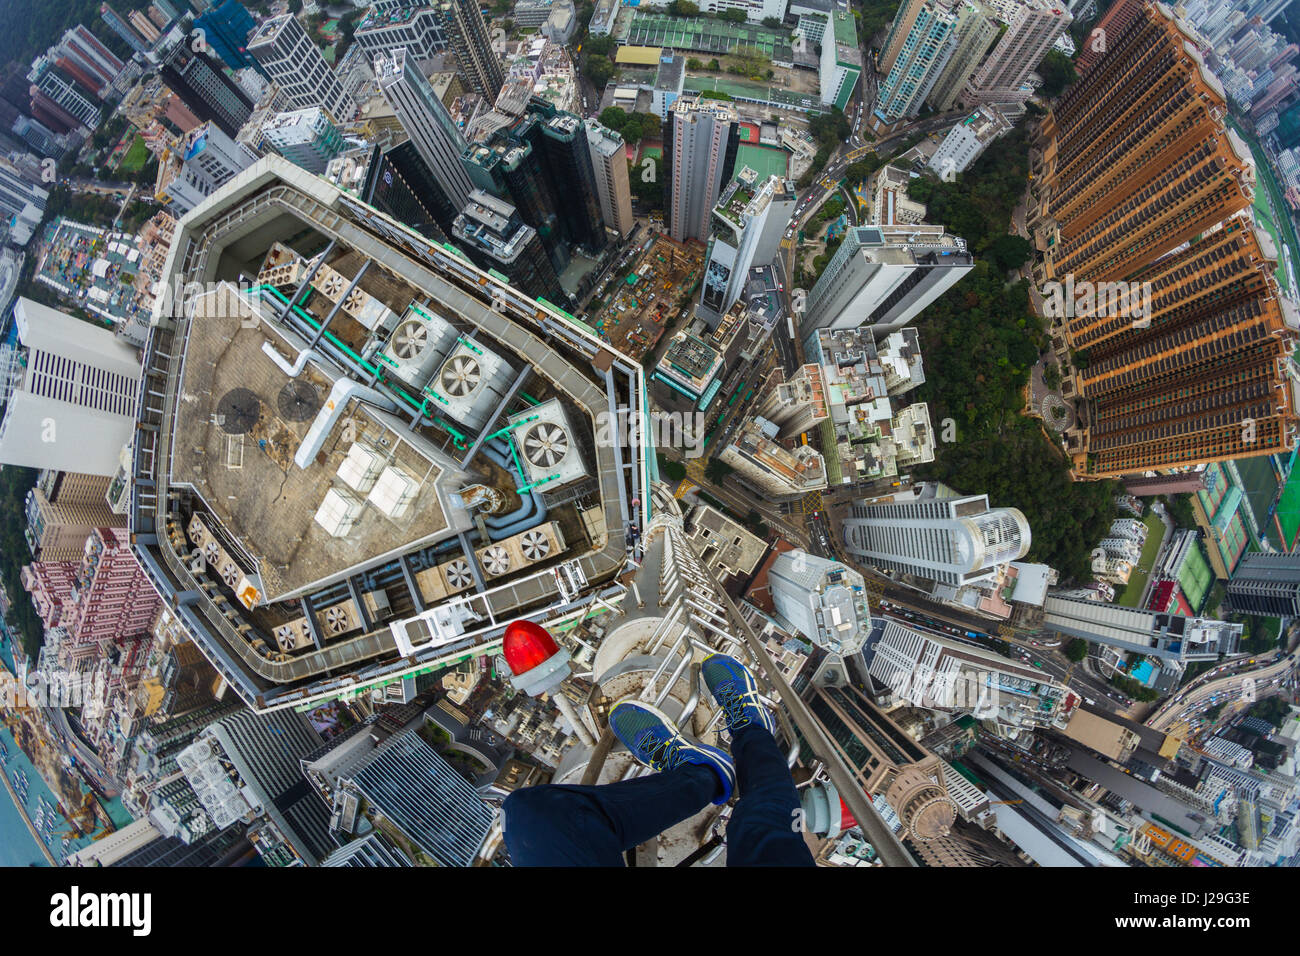 Rooftopper Denis Krasnov schaut hinunter auf die Stadt. Atemberaubende Bilder aus einem Team von Nervenkitzel, die Eroberung Dächer über 800 Fuß hohen es unmöglich machen, nicht nach unten. Diese Schwindel induzierenden Bilder wurden gemacht, als die Gruppe der Draufgänger Hongkong auf eine Entdeckungsreise besuchte. Die Aufnahmen zeigen die Gruppe hängen von der Seite des Gebäude, mit Blick auf den hektischen Verkehr unten und an der Spitze der Metallsäule ohne Fangvorrichtung ausgleichend. Die atemberaubenden Bilder wurden von russischen Fotografen Denis Krasnov (20). Wenn er zum ersten Mal der Idee, Reisen nach Hong Kong, Denis Stockfoto